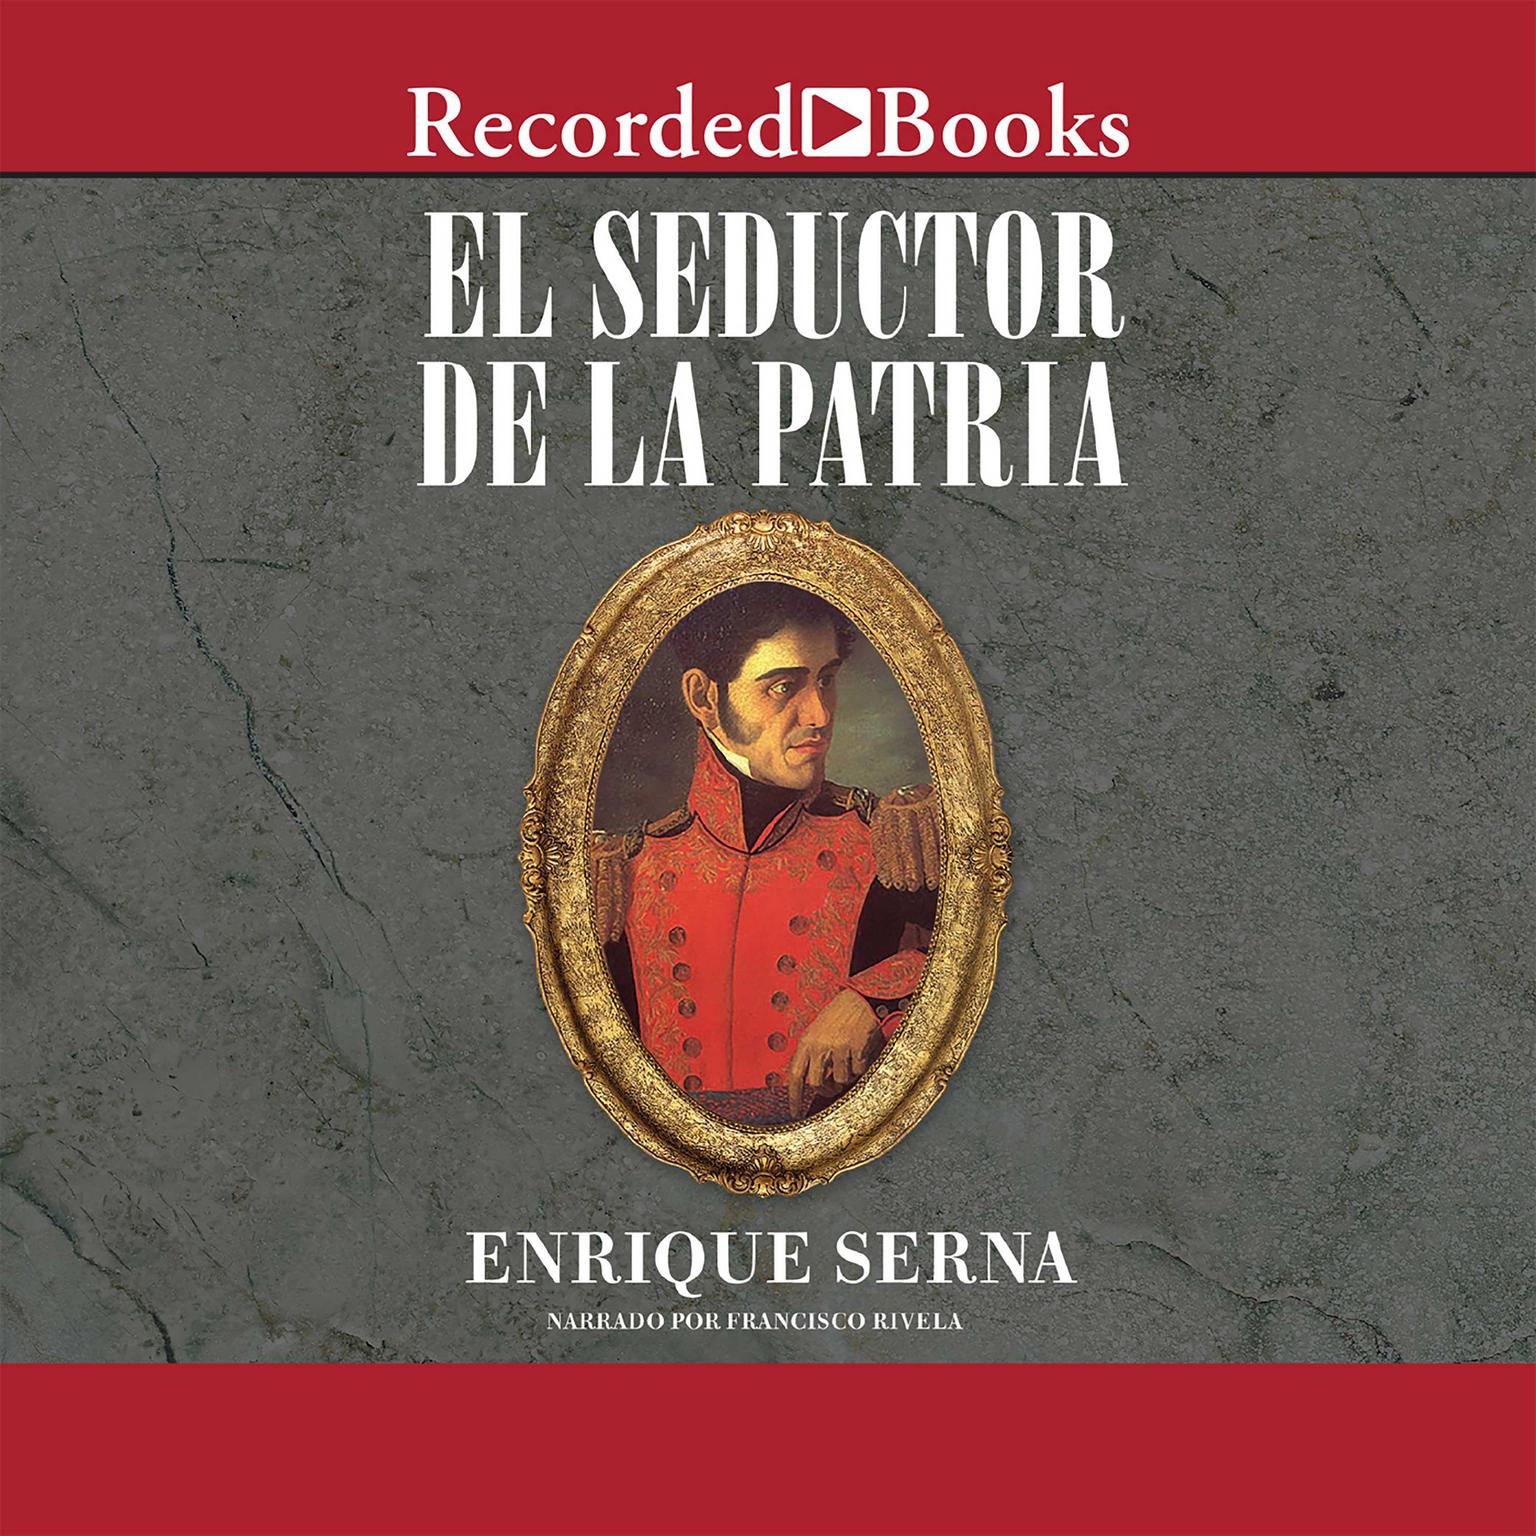 El seductor de la patria (The Seductor of the Motherland) Audiobook, by Enrique Serna